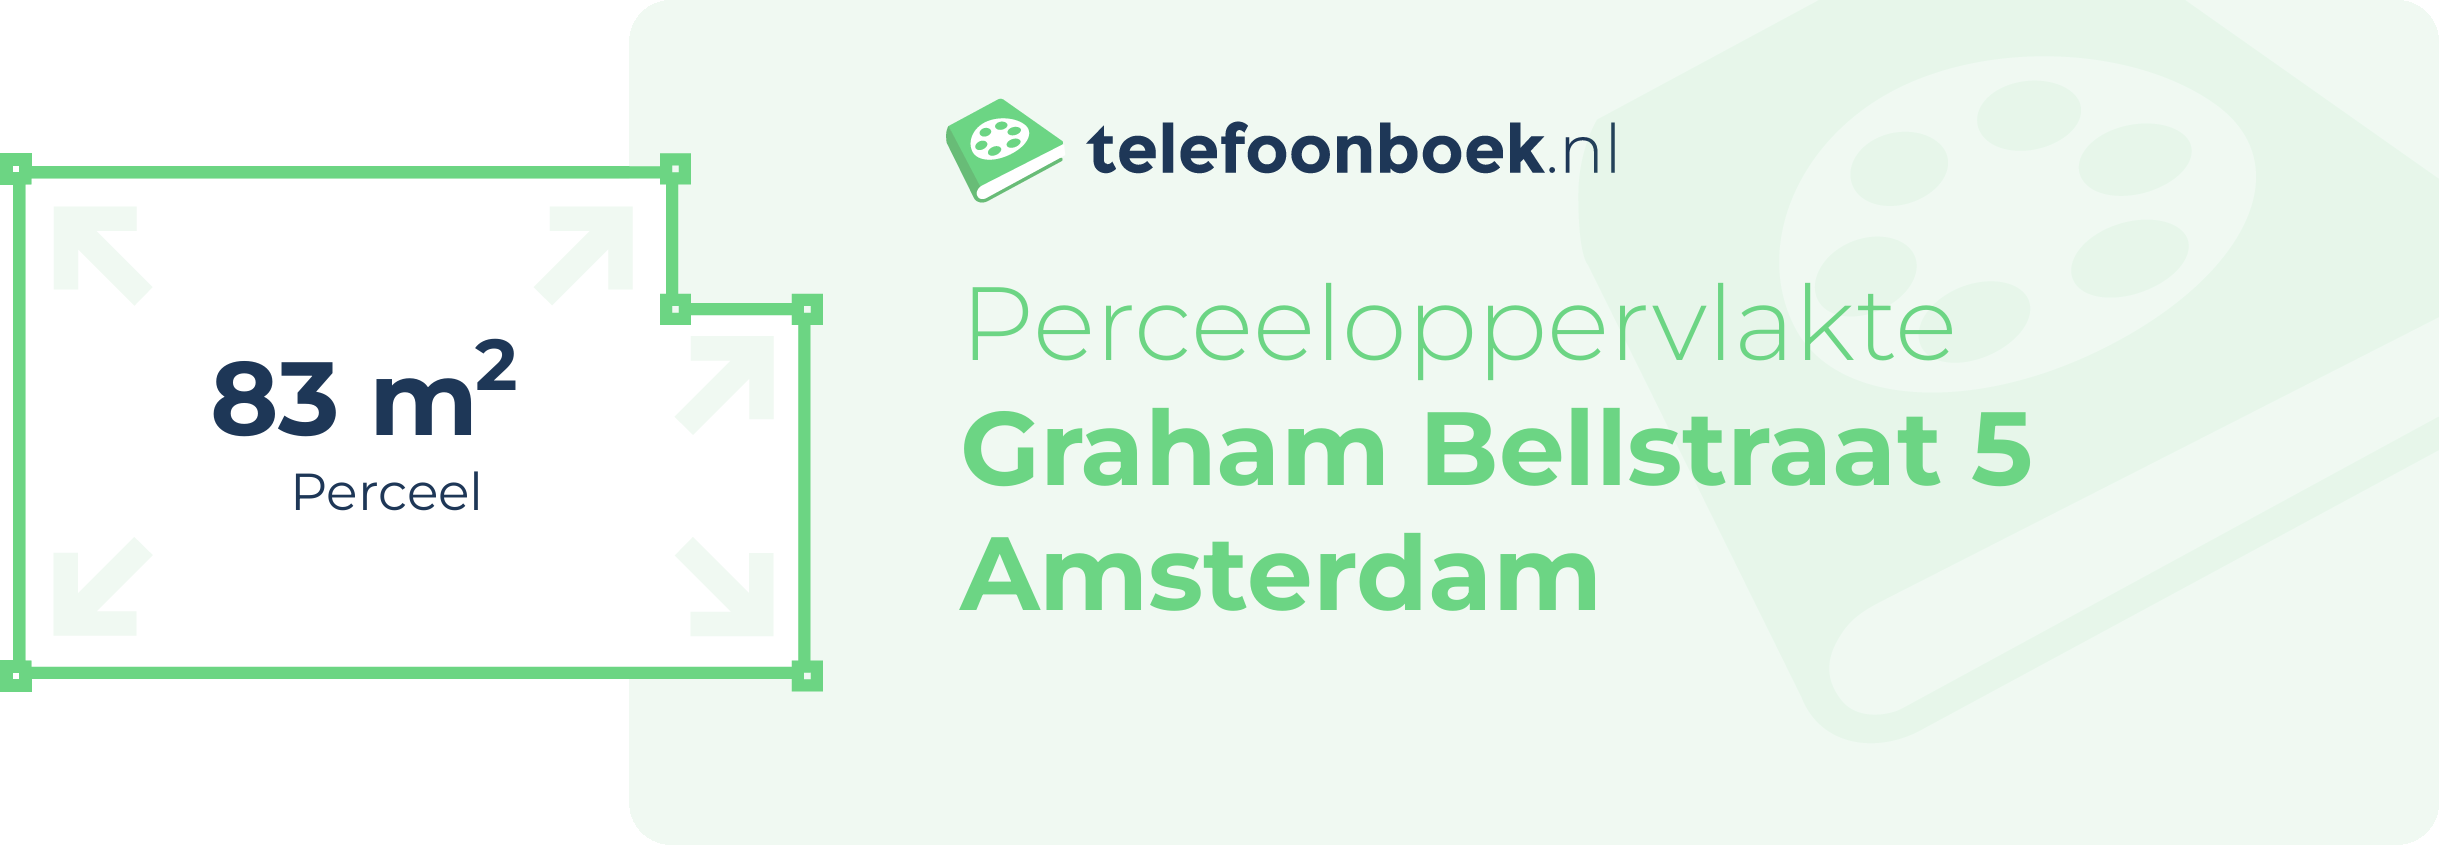 Perceeloppervlakte Graham Bellstraat 5 Amsterdam